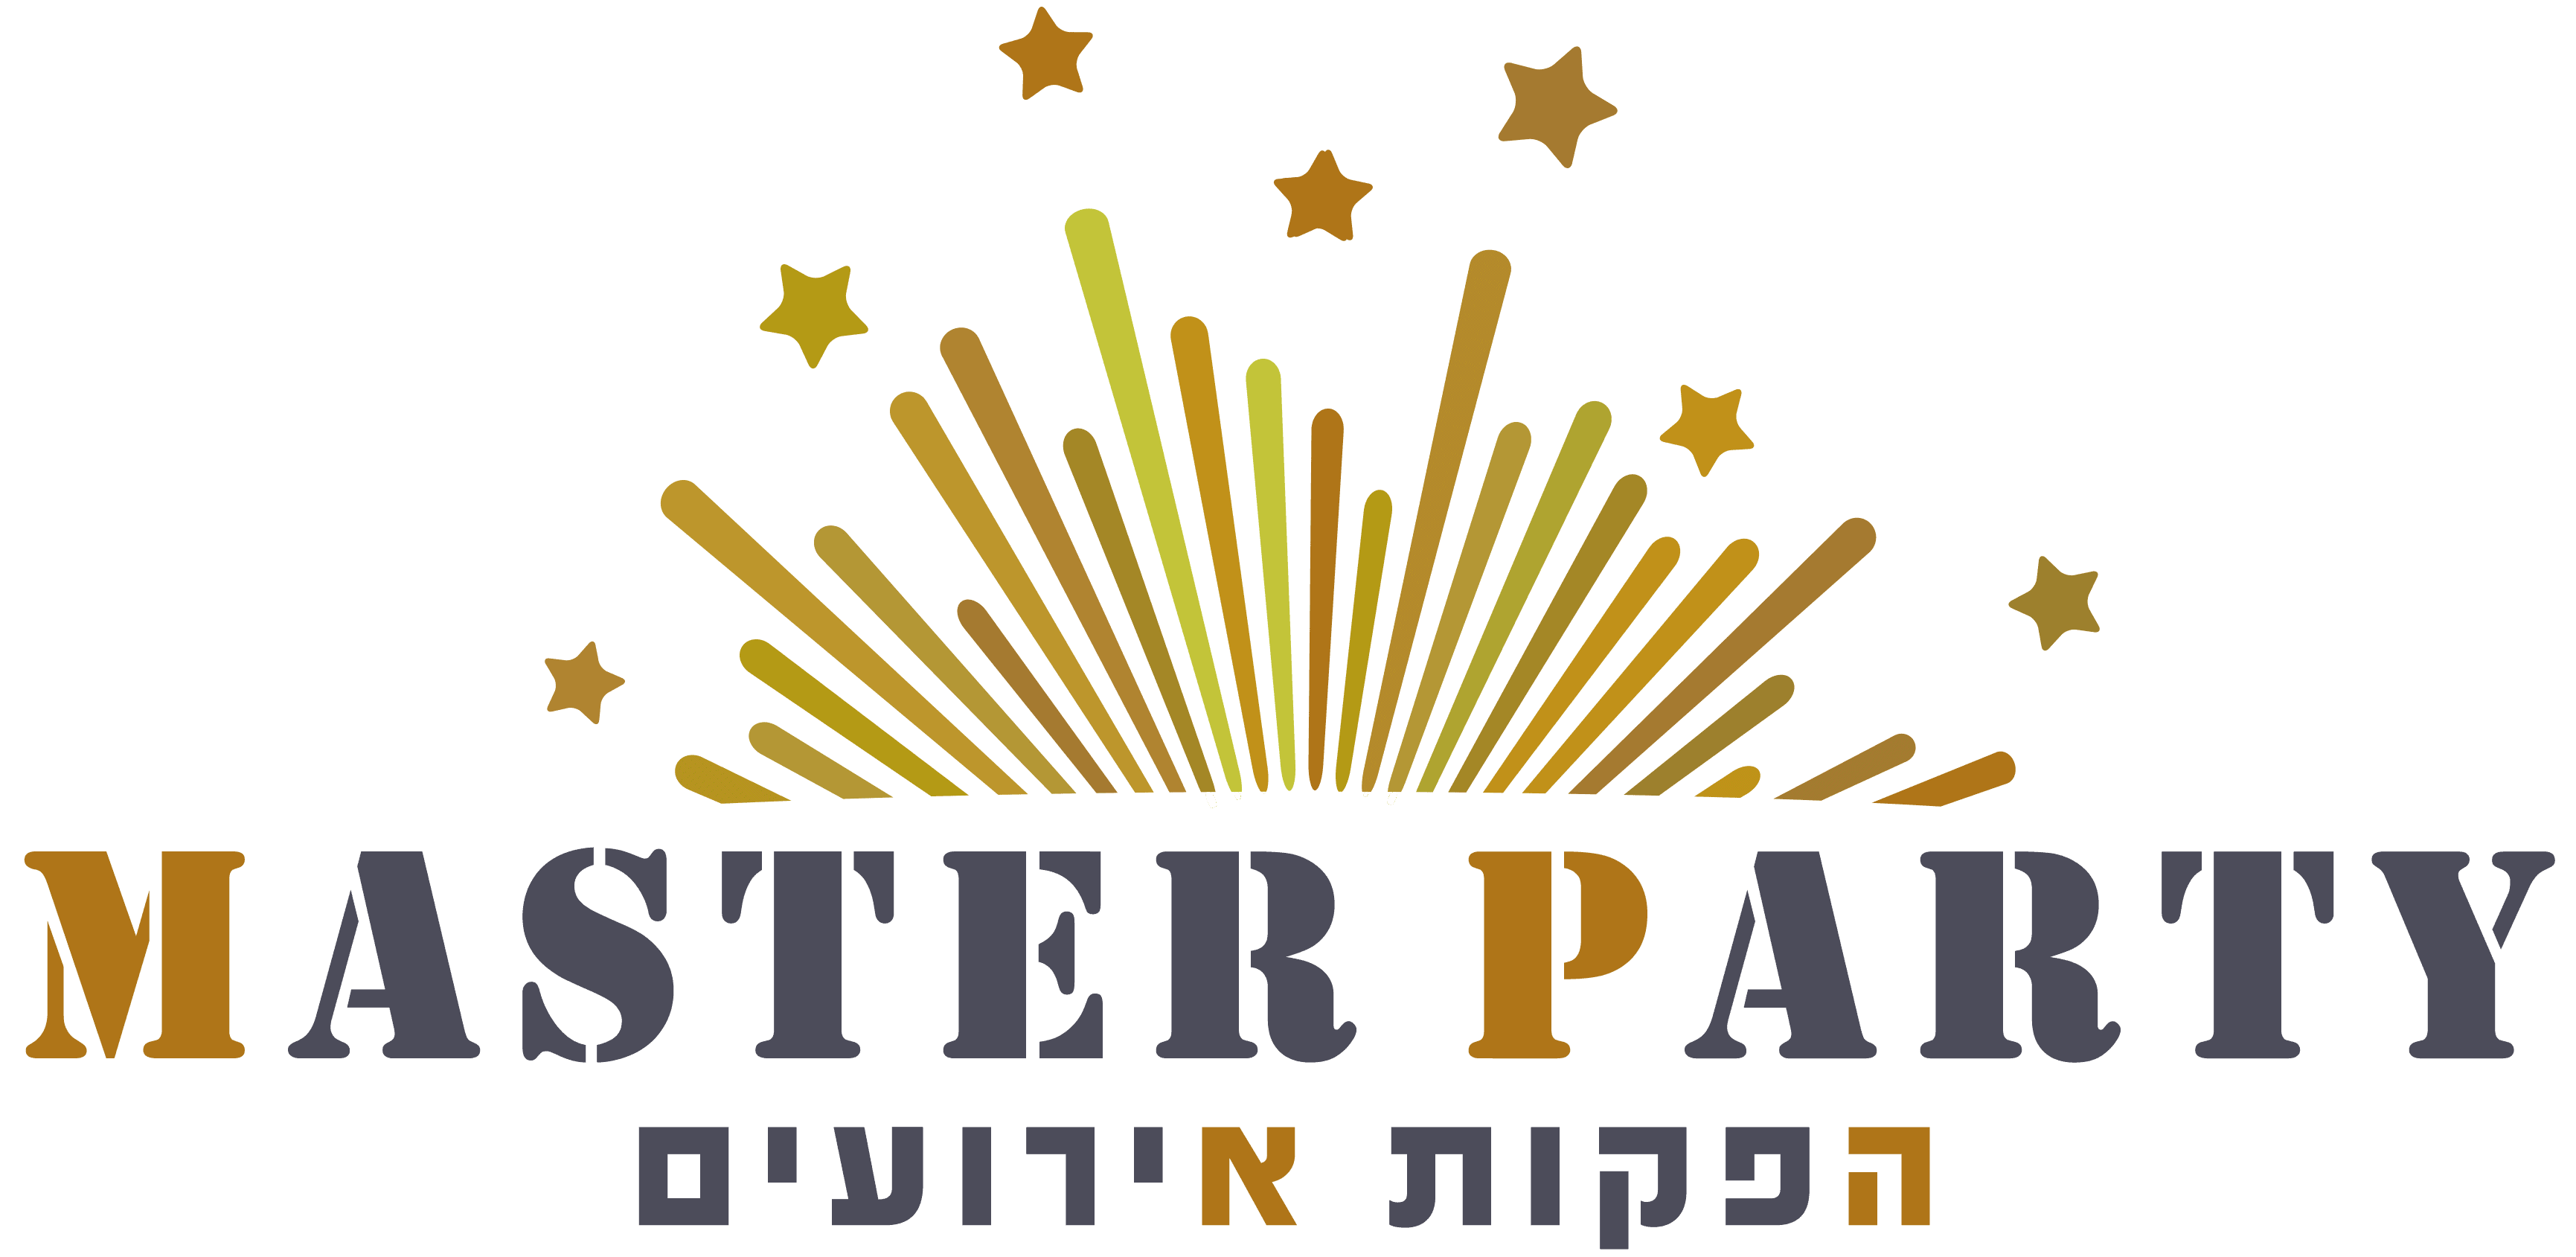 Master Party - מאסטר פארטי לוגו אתר